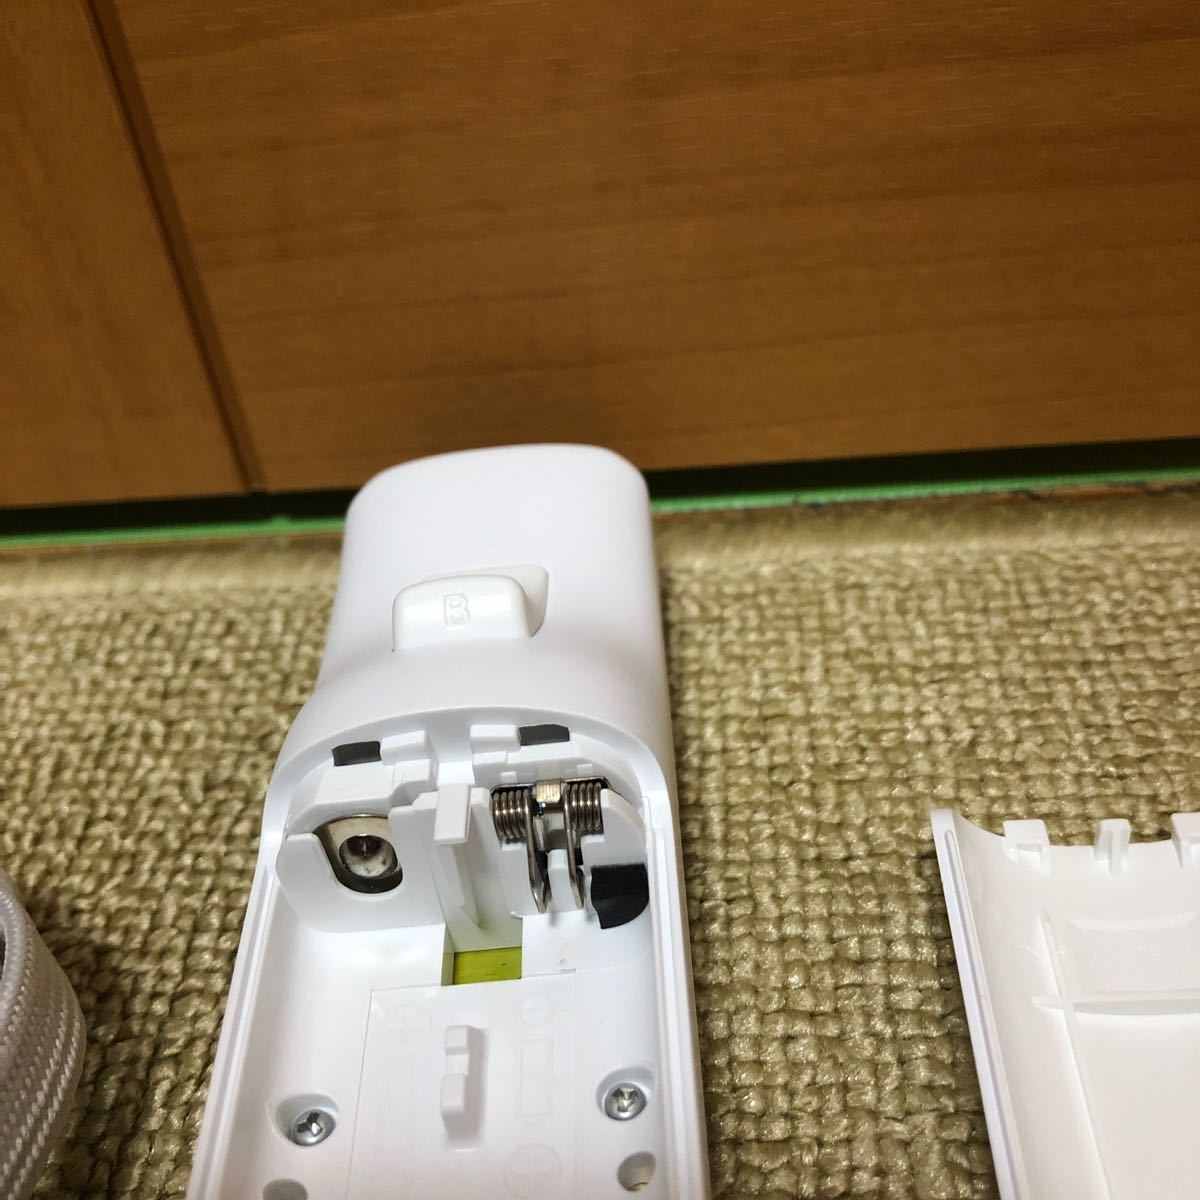 【匿名送料無料】家庭用ゲーム機　任天堂Wiiリモコンモーションプラス ホワイト157-35